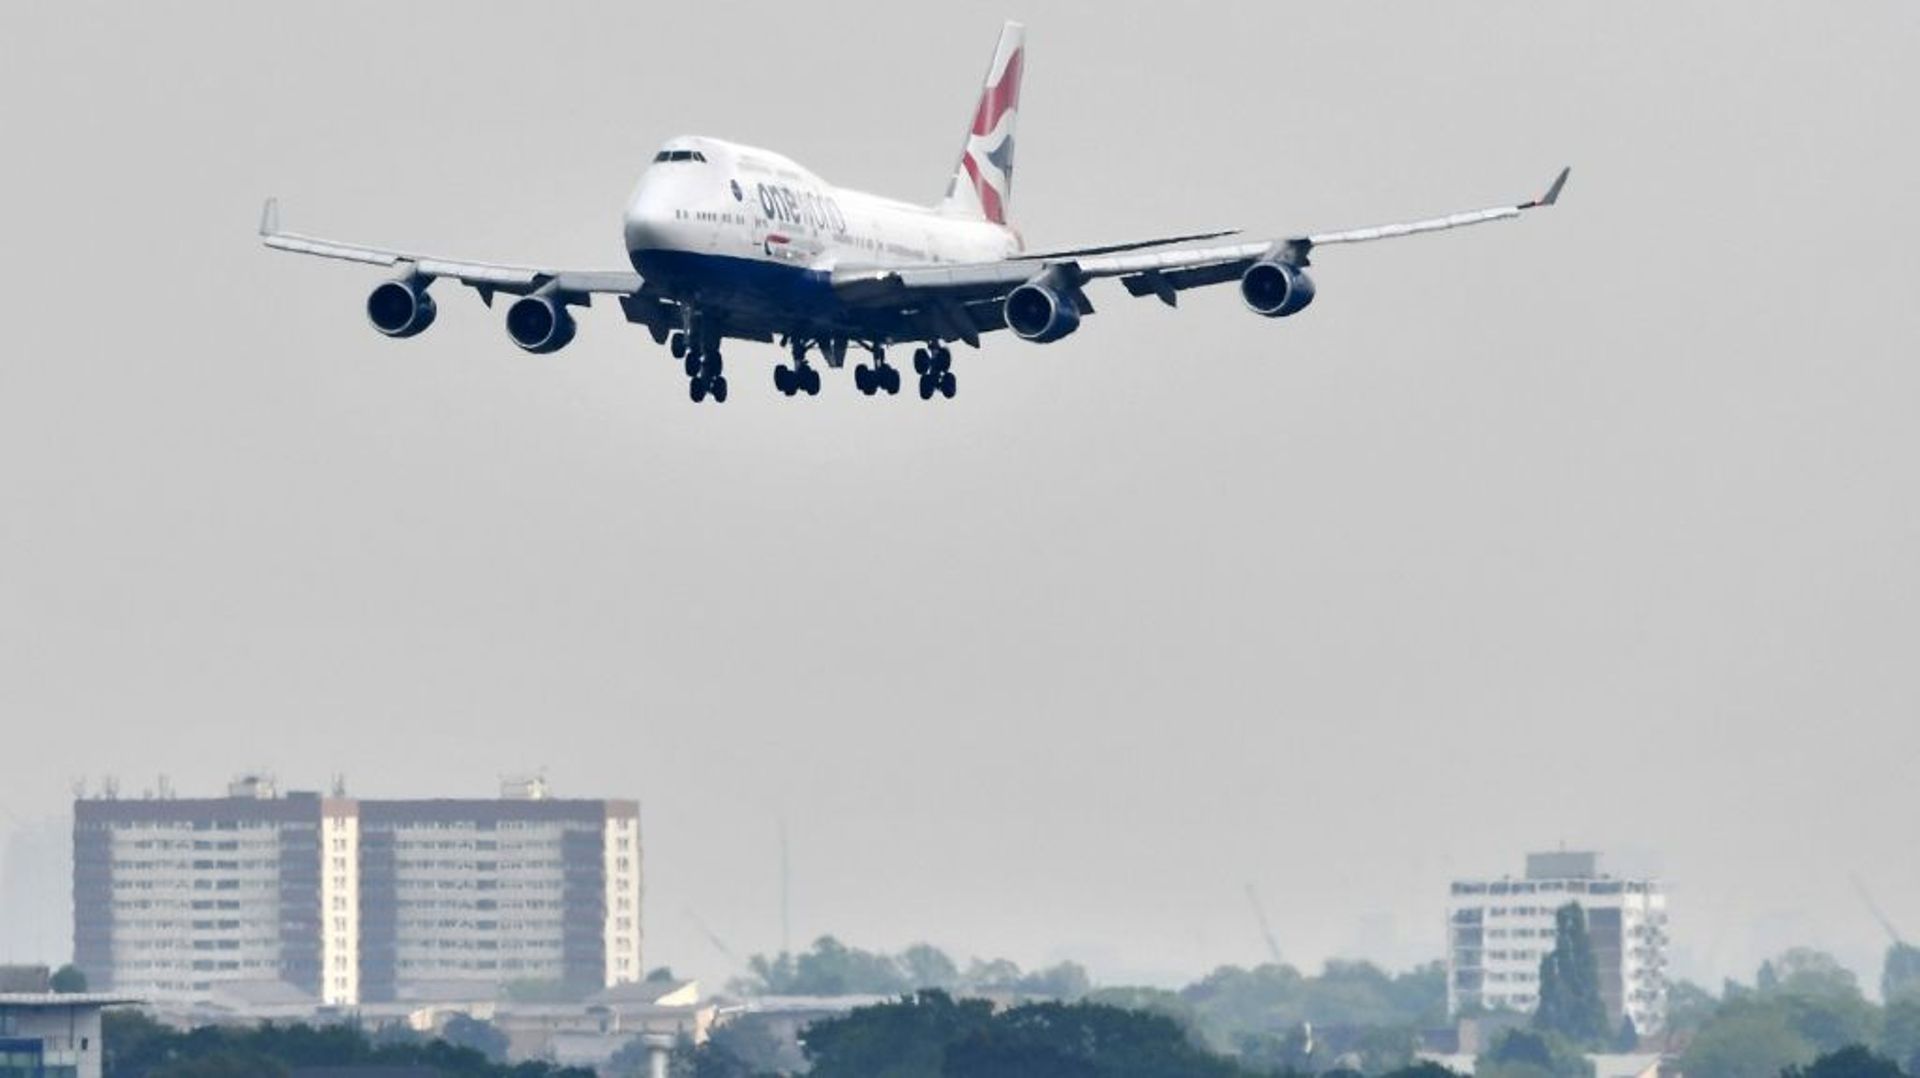 Un Boeing 747 de la compagnie britannique British Airways se prépare à atterrir à l'aéroport de London Heathrow, à l'ouest de Londres, le 3 mai 2019